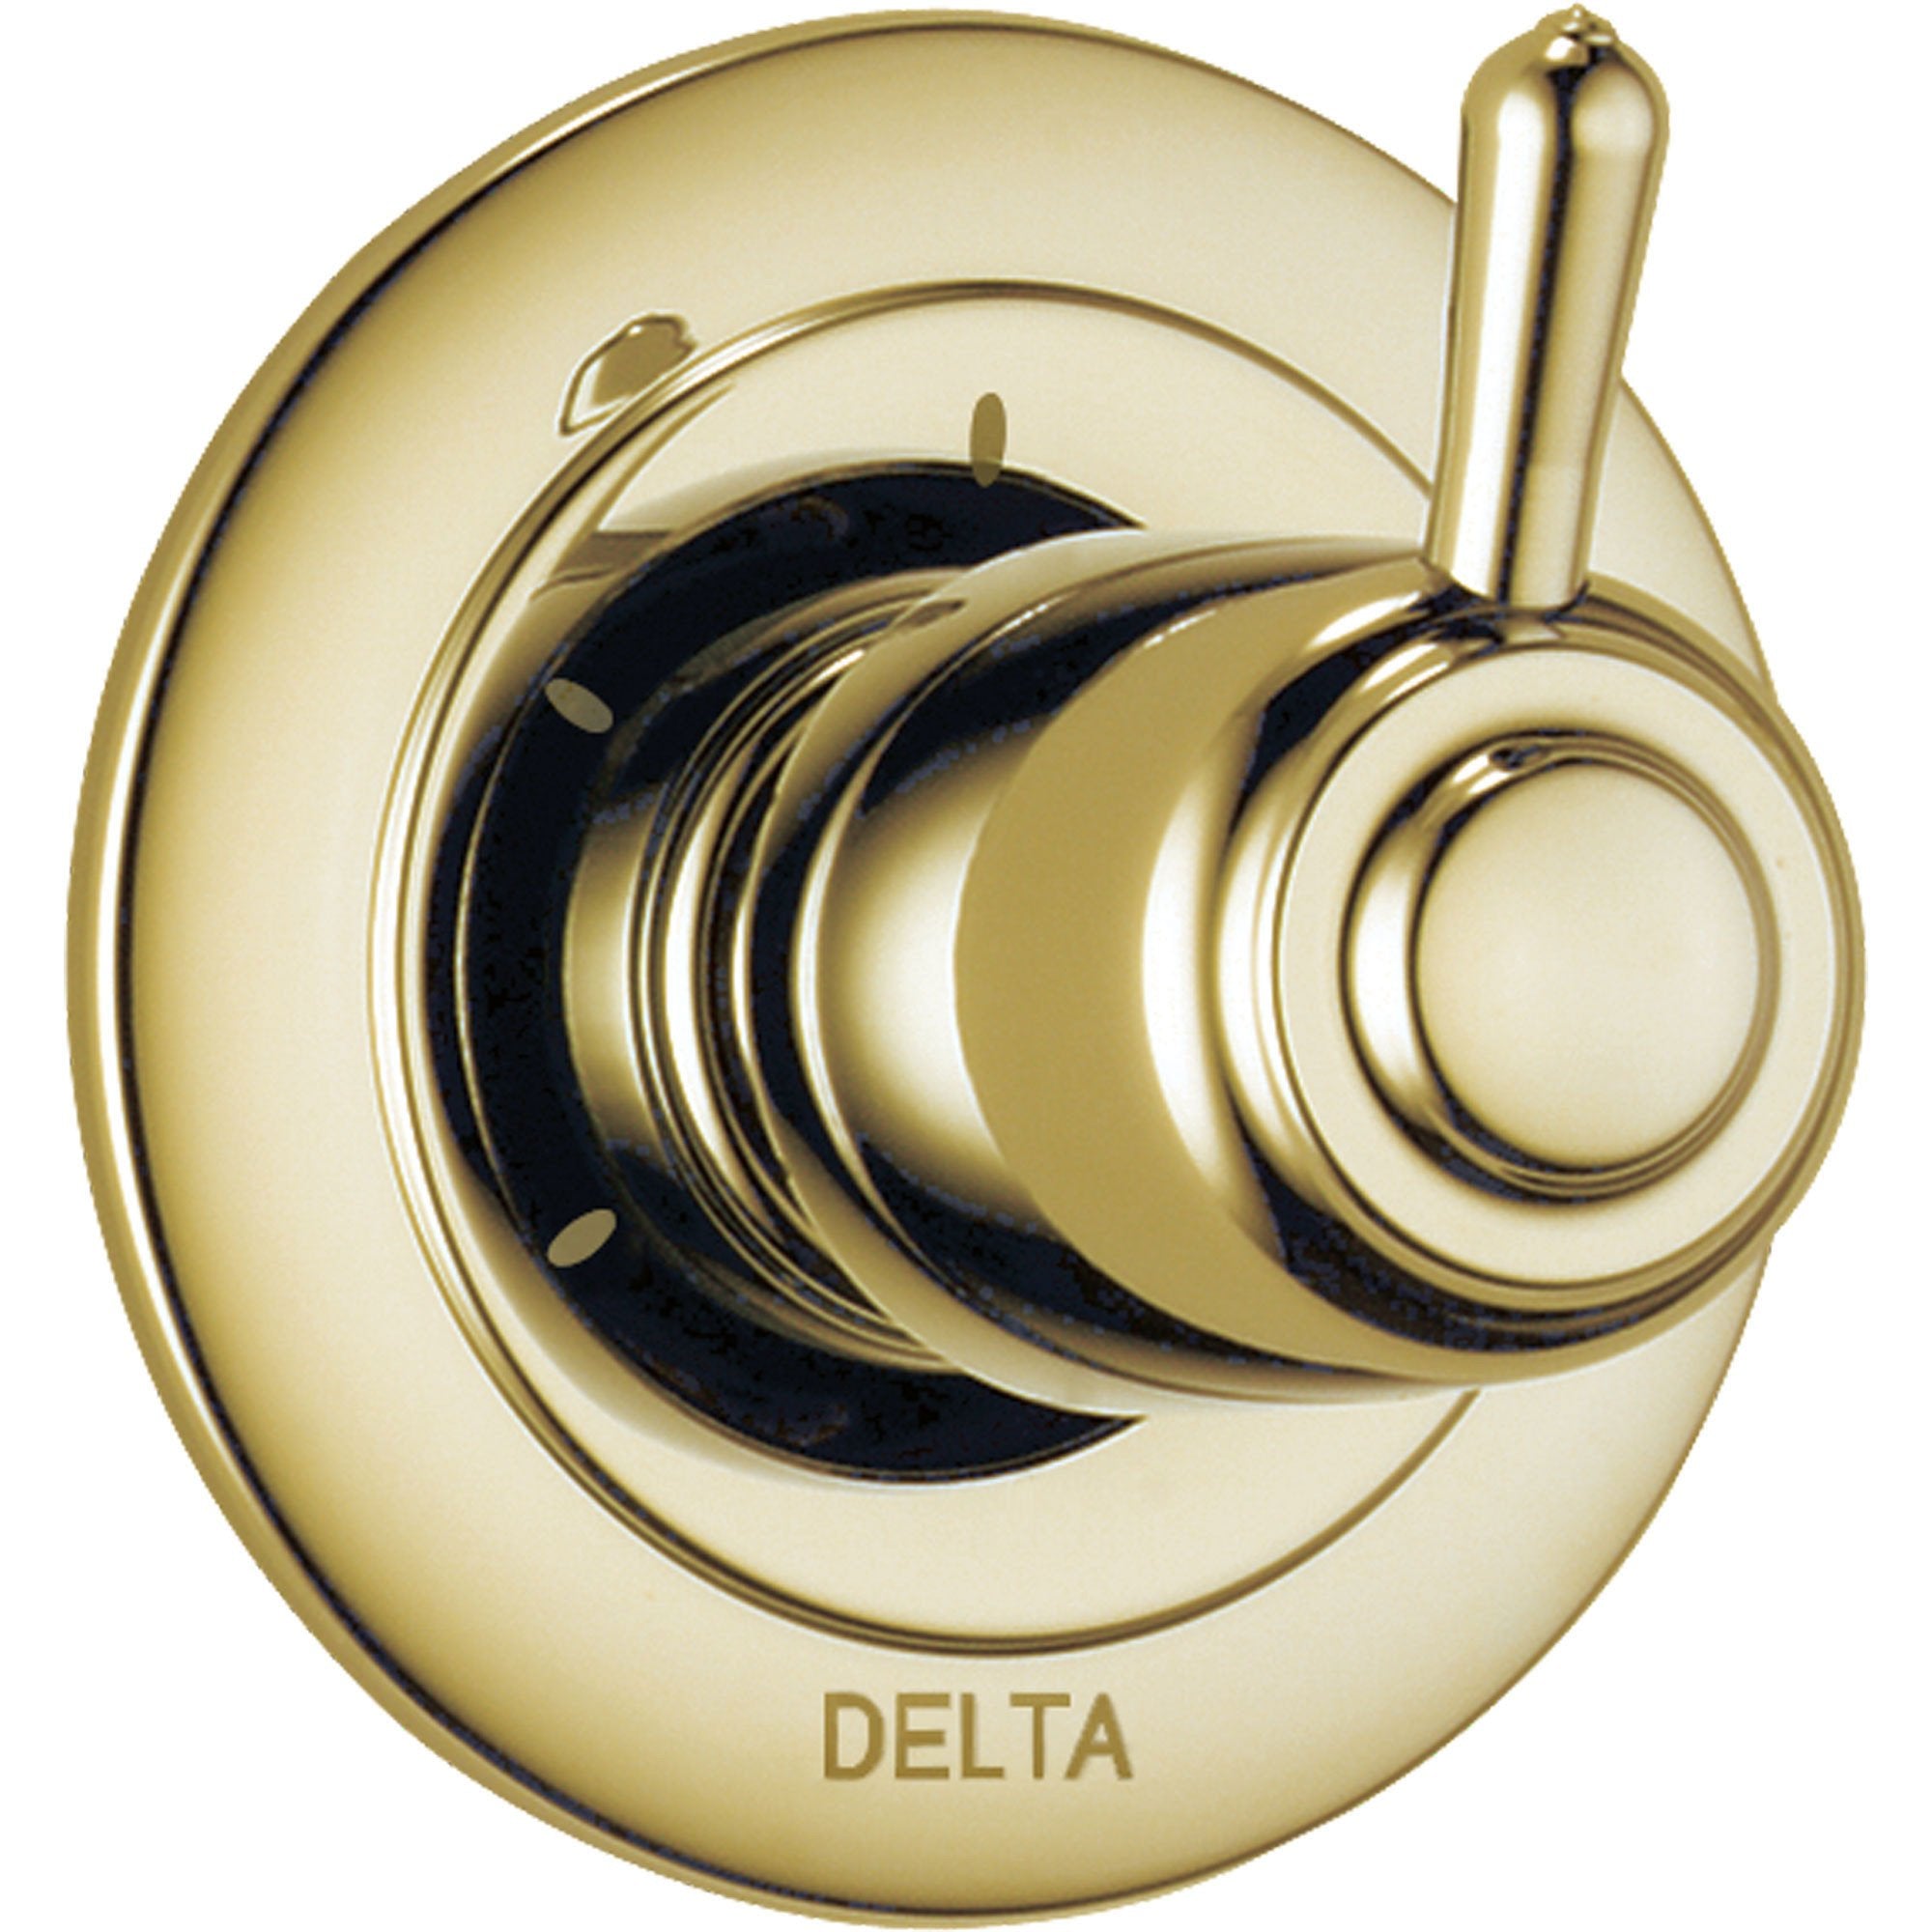 Delta 3-Setting Polished Brass Shower Diverter Single Handle Trim Kit 560967